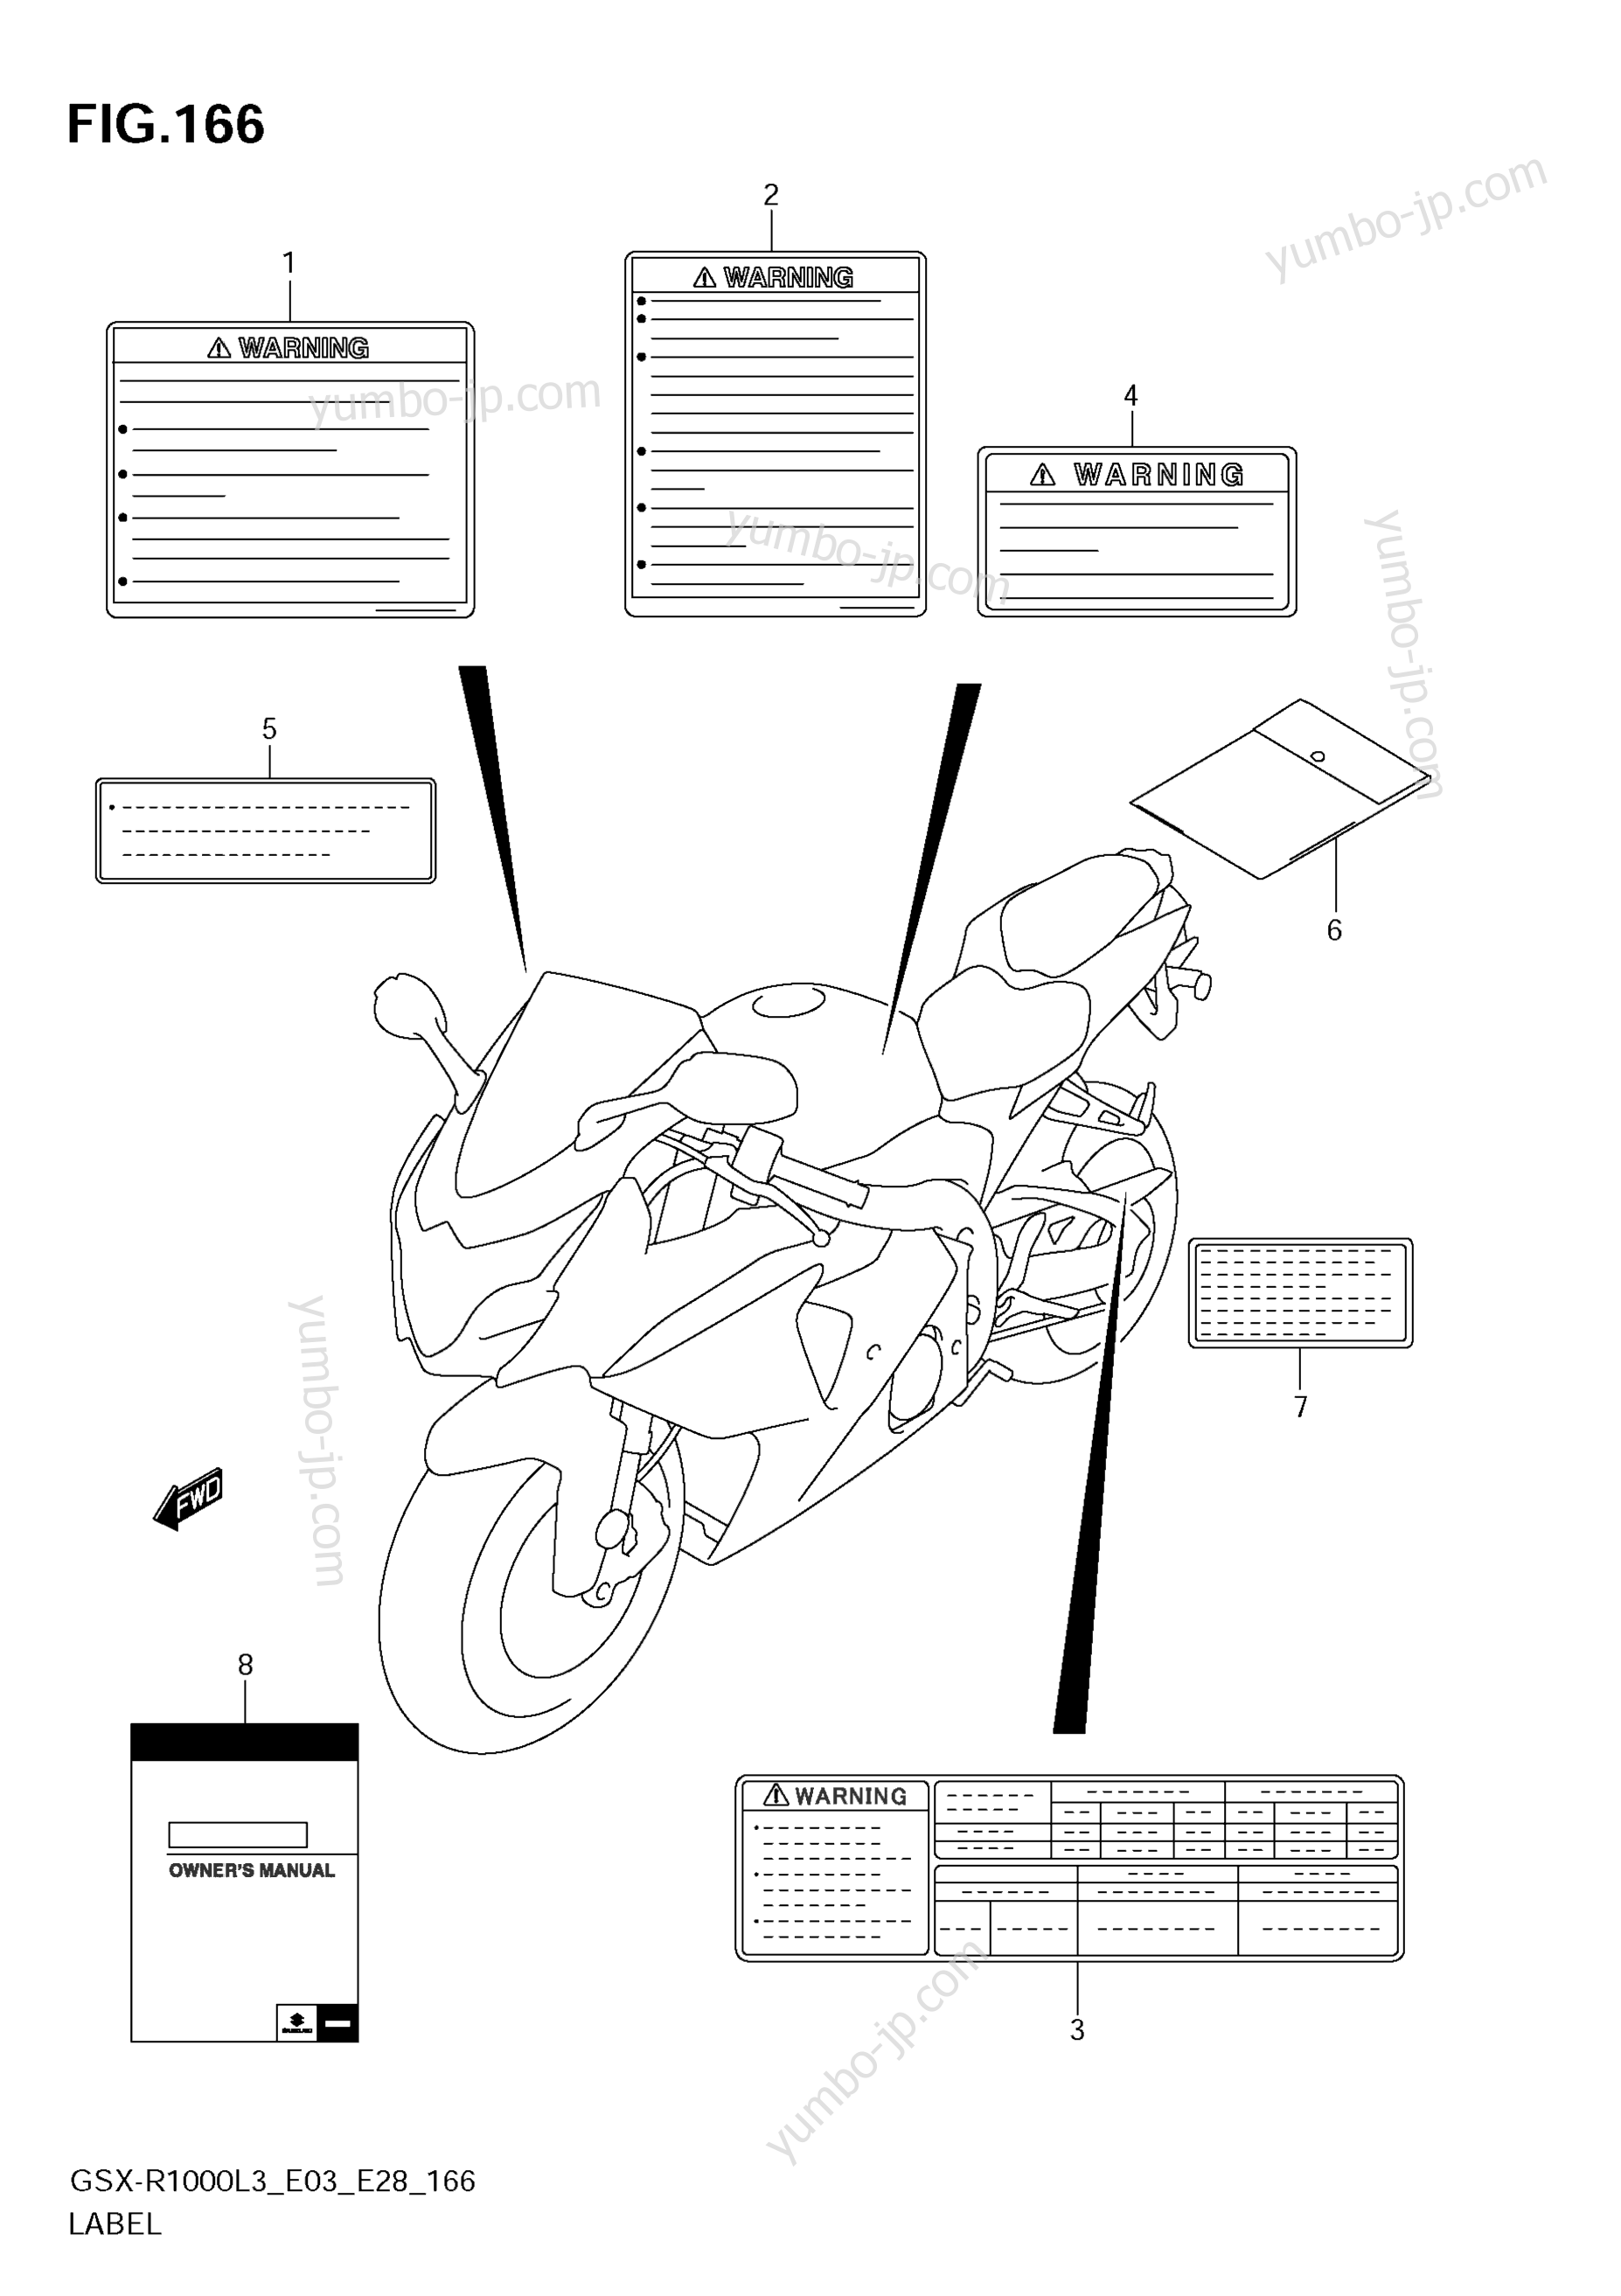 LABEL (GSX-R1000ZL3 E33) for motorcycles SUZUKI GSX-R1000 2013 year